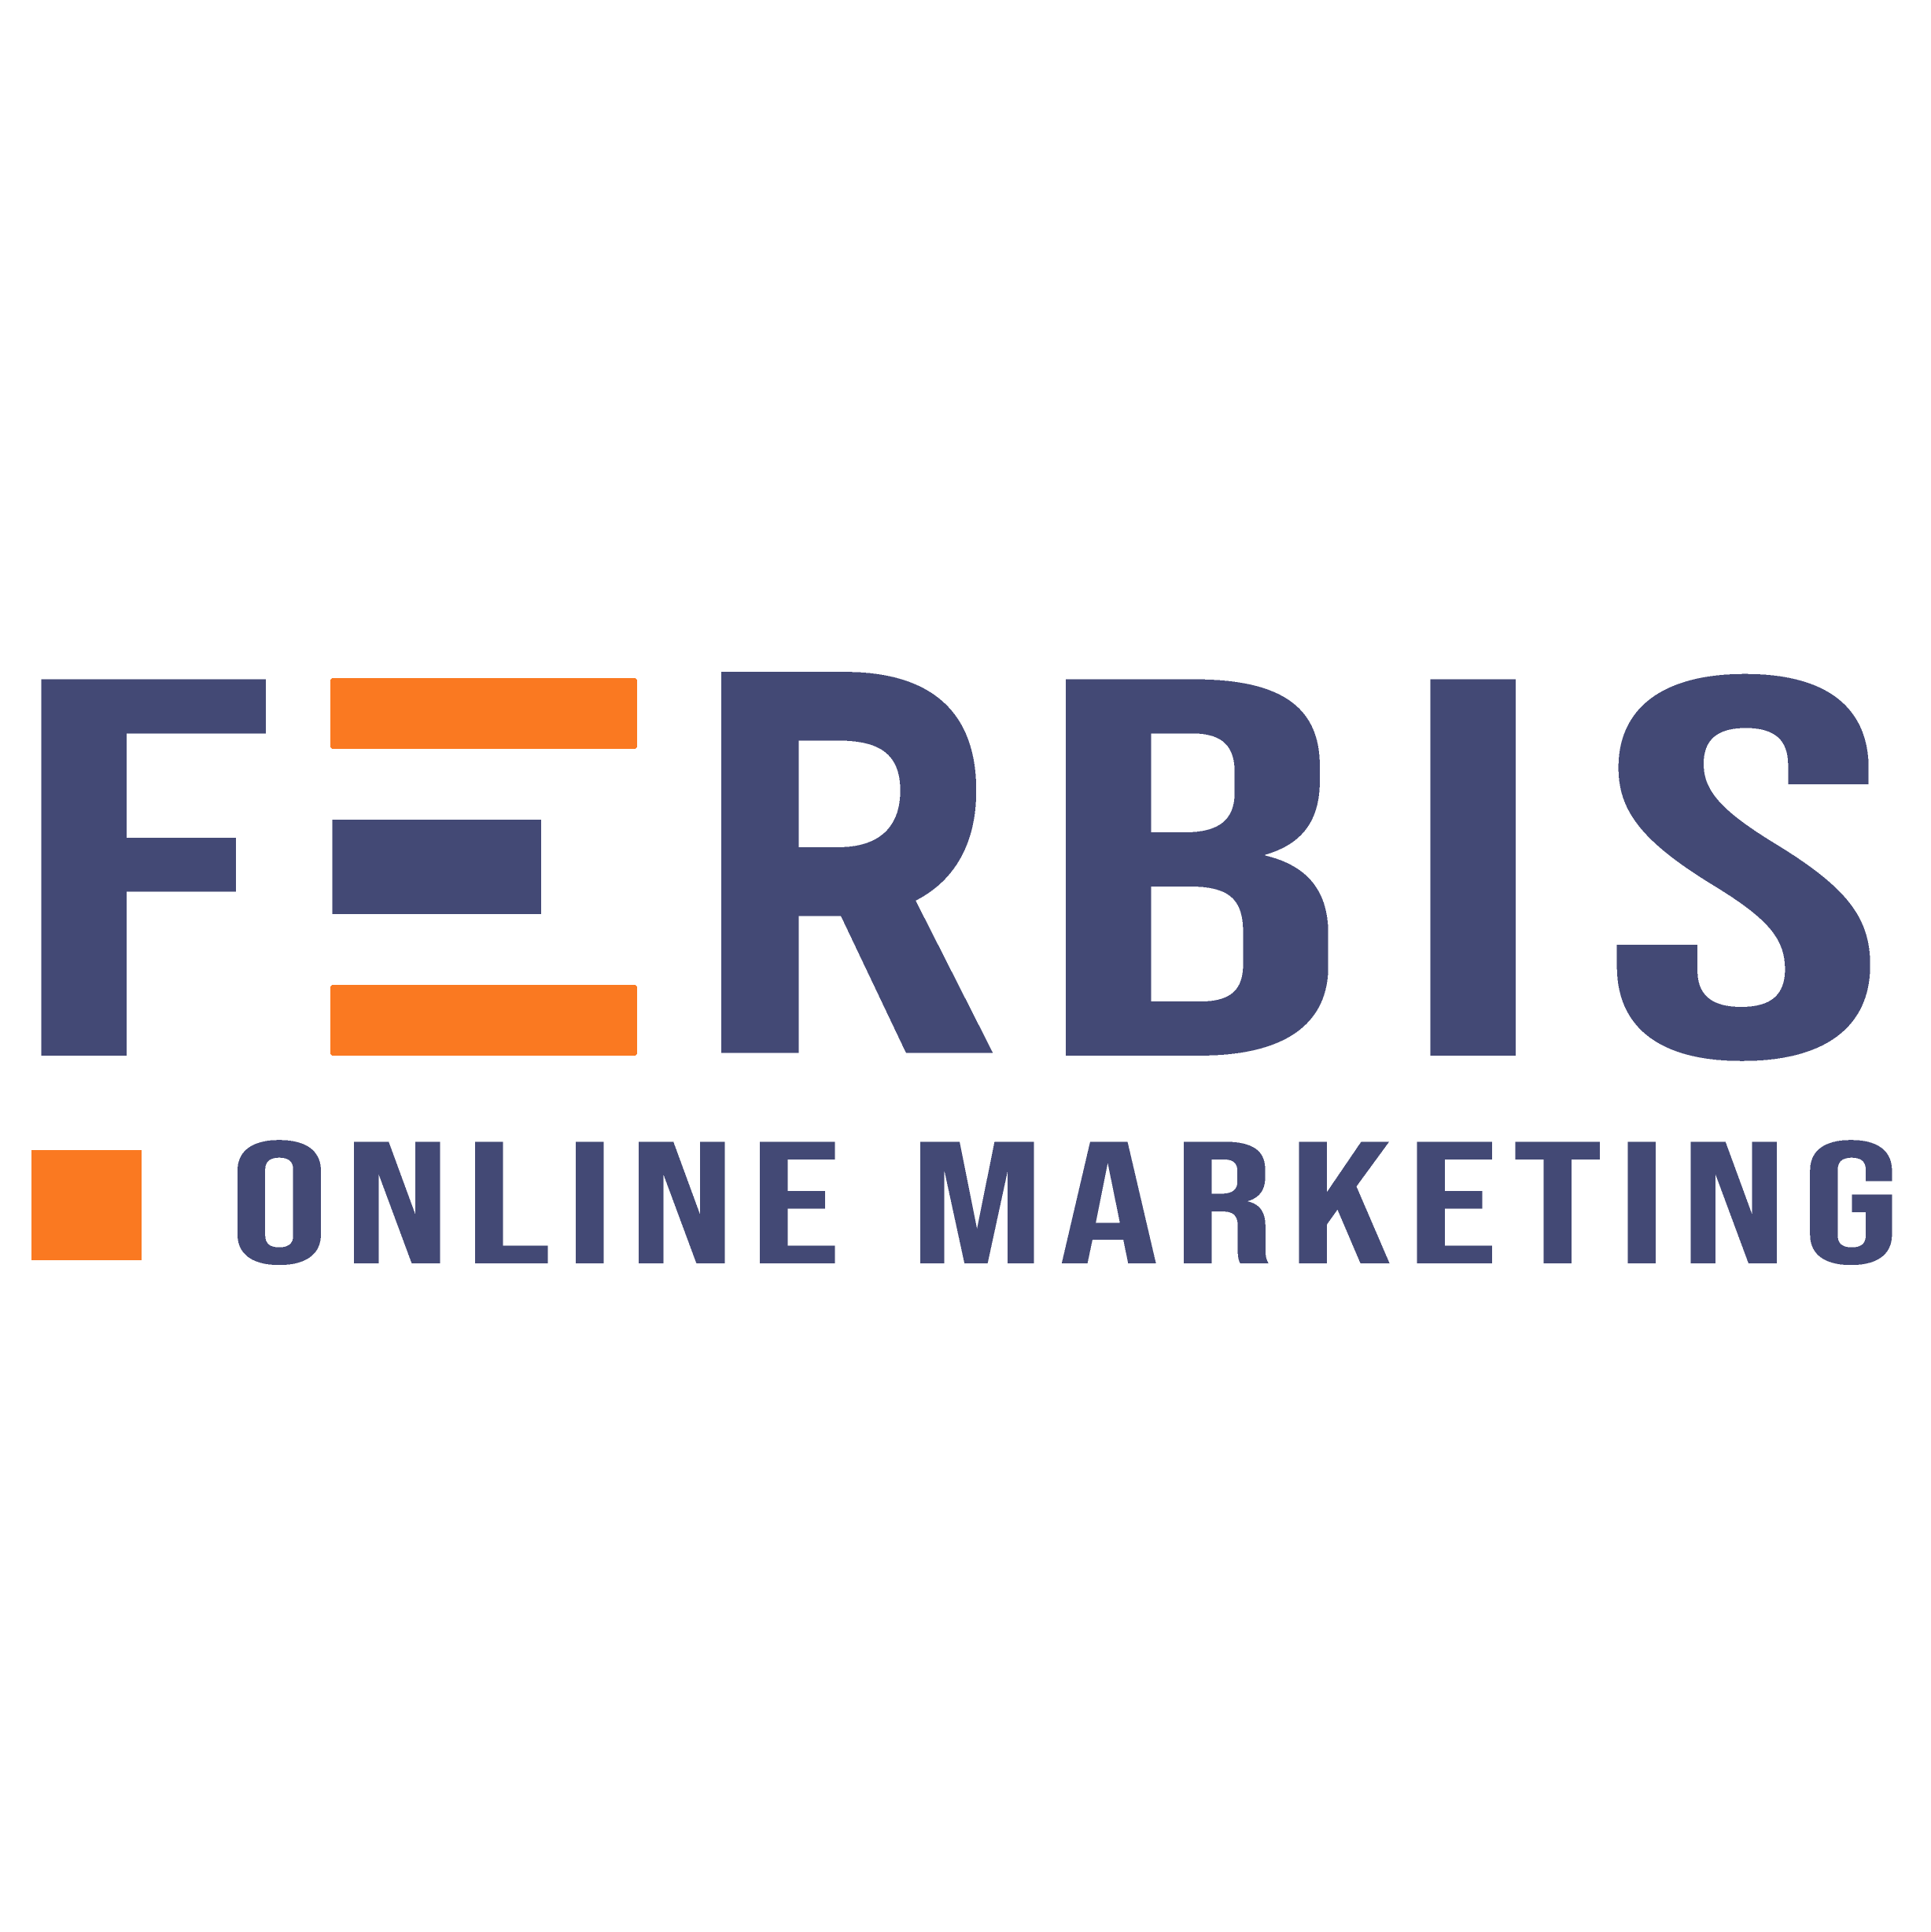 ferbis logo